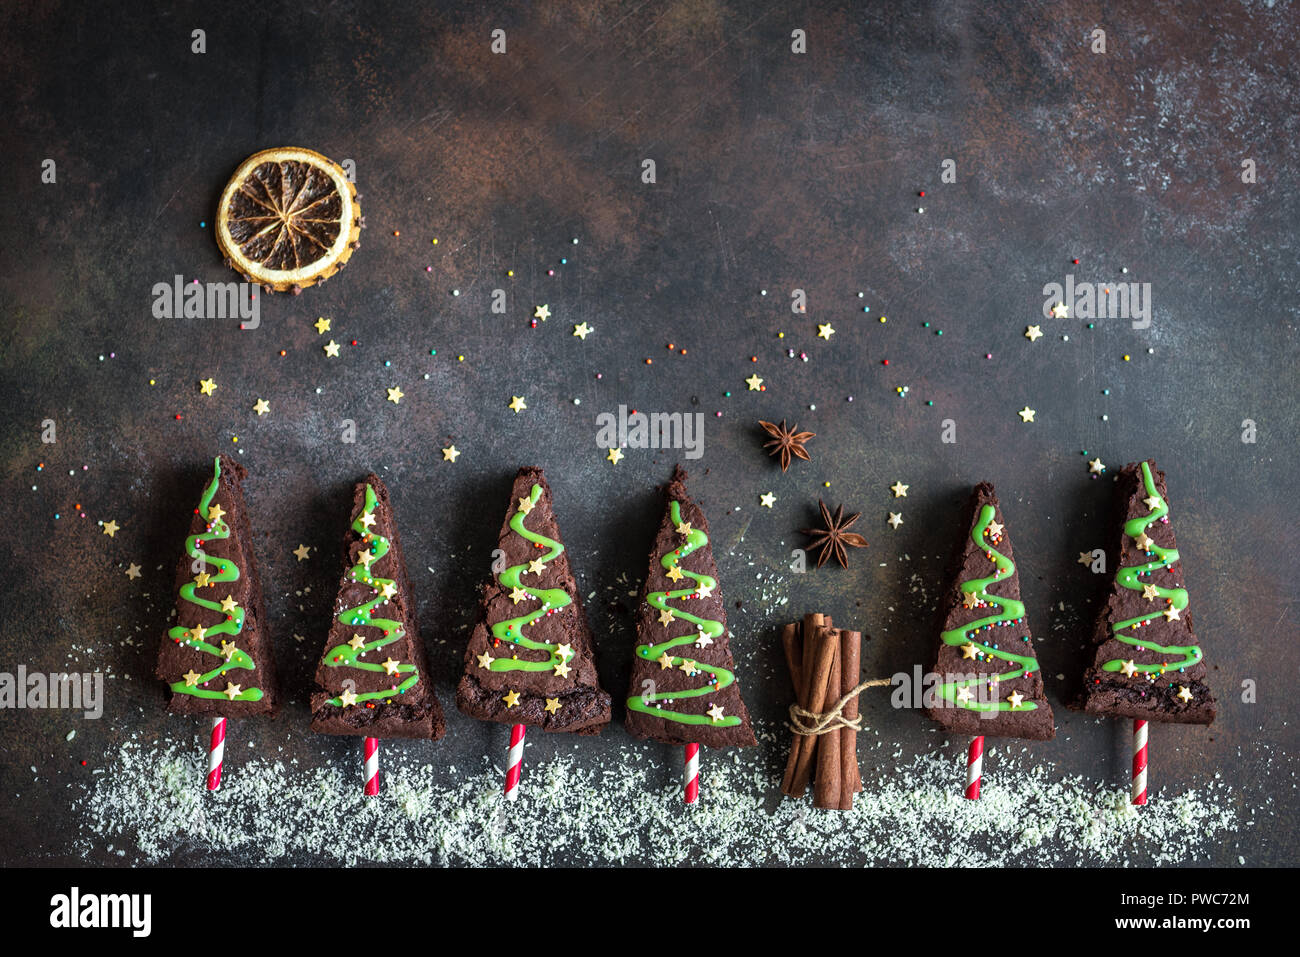 Brownies au chocolat en forme d'arbres de Noël avec glaçage vert et festive sprinkles, vue de dessus, copiez l'espace. Vacances d'hiver ou de noël sucré pastry Banque D'Images